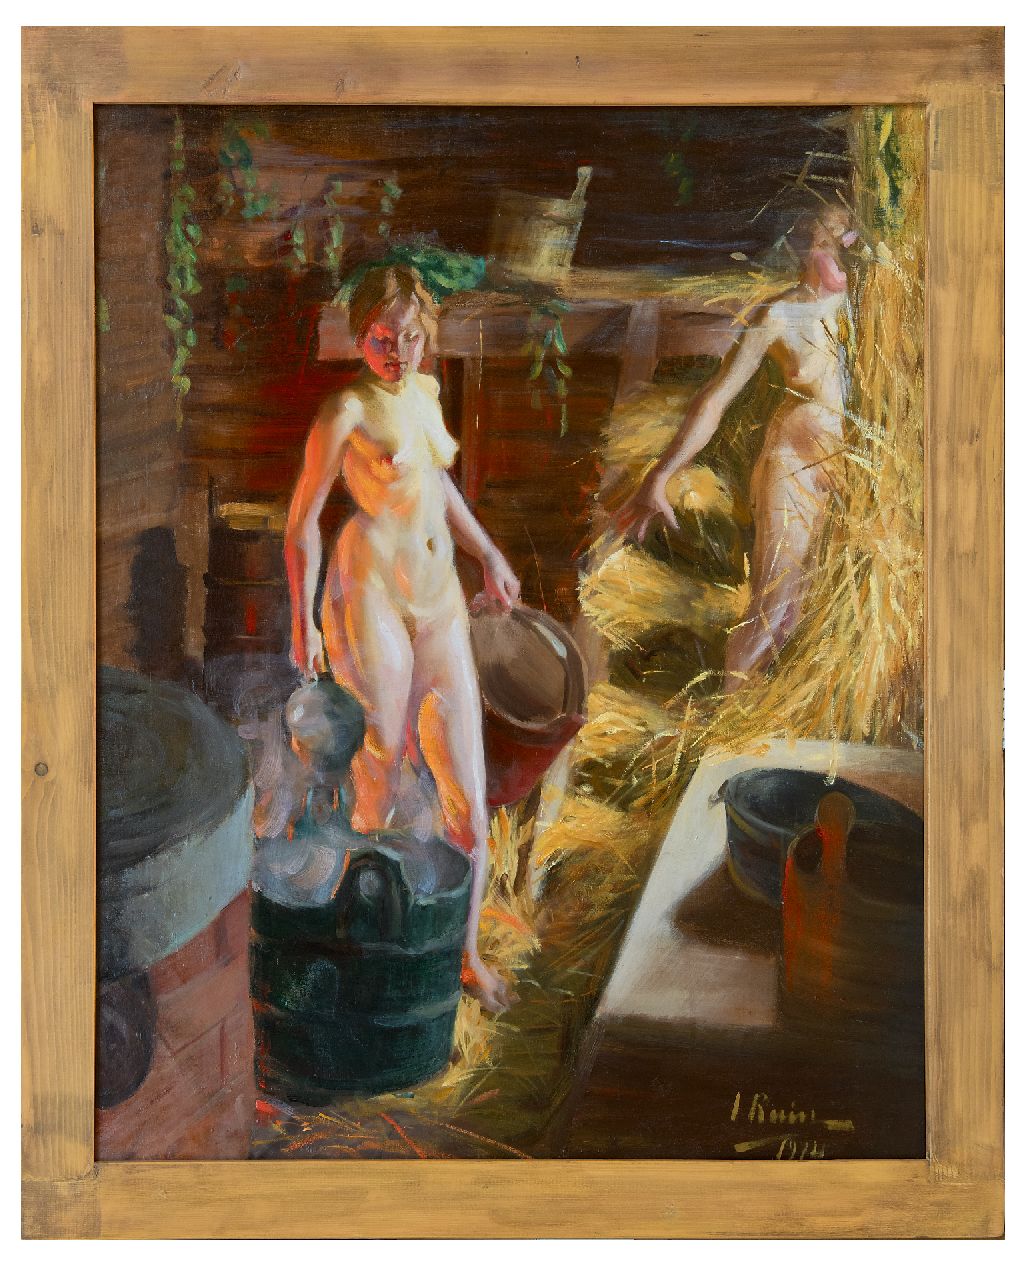 Ruin I.L.  | Ingrid Linnea Ruin | Gemälde zum Verkauf angeboten | Zwei Mädchen in der Sauna, Öl auf Leinwand 92,3 x 76,3 cm, Unterzeichnet r.u. und datiert 1914